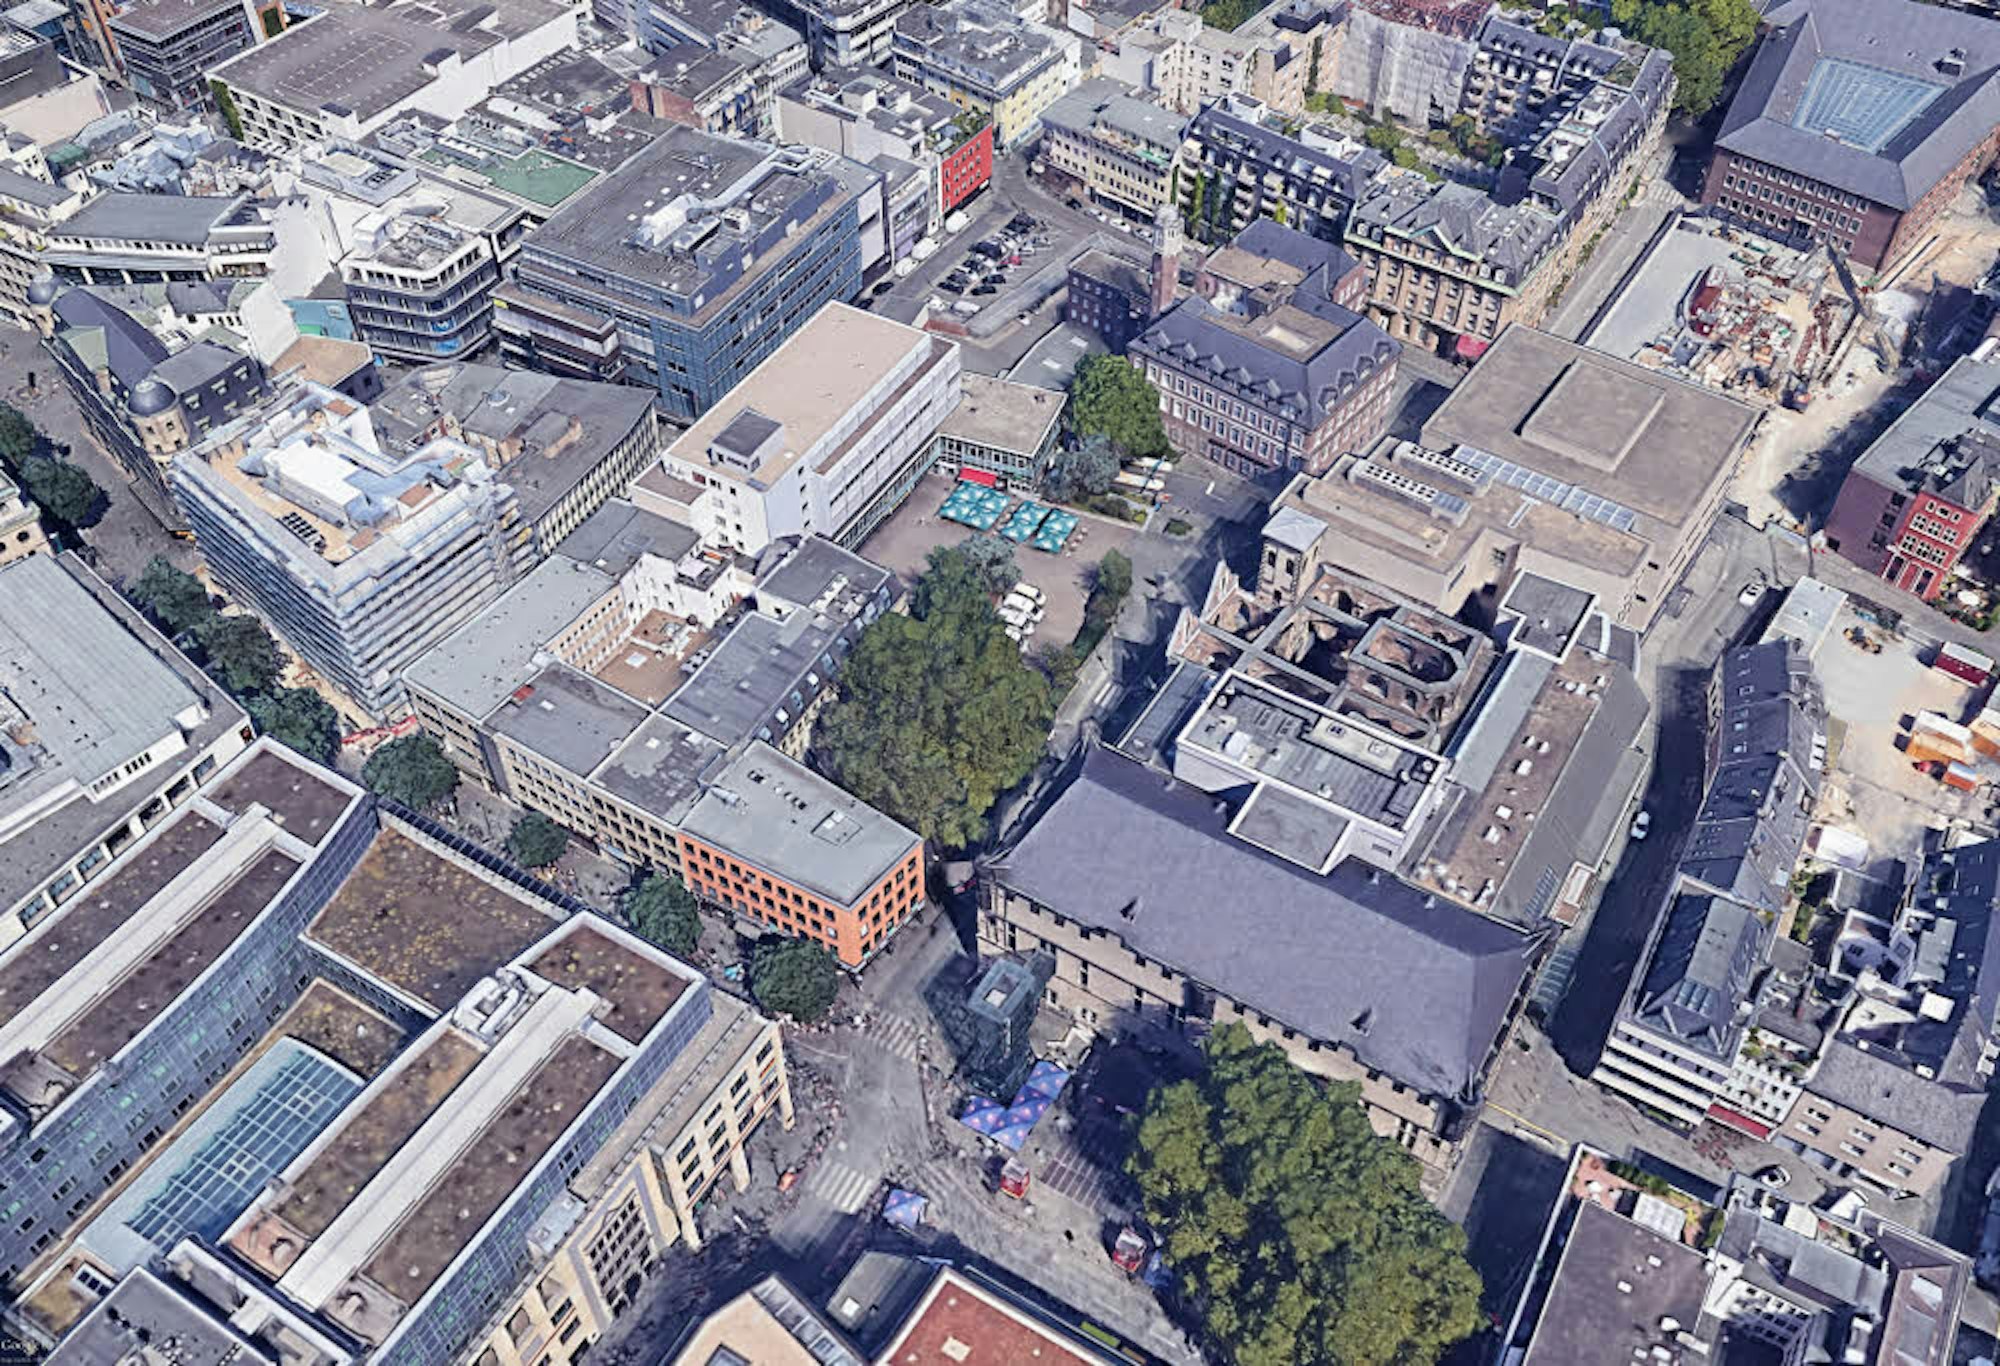 Der Quatermarkt (Bäume in der Mitte), auf dem der Neubau entstehen soll. Das benachbarte Haus Neuerburg, ebenfalls am Platz, soll freigestellt werden. Vorne ist der Gürzenich zu sehen (Gebäude an den Bäumen vorne).